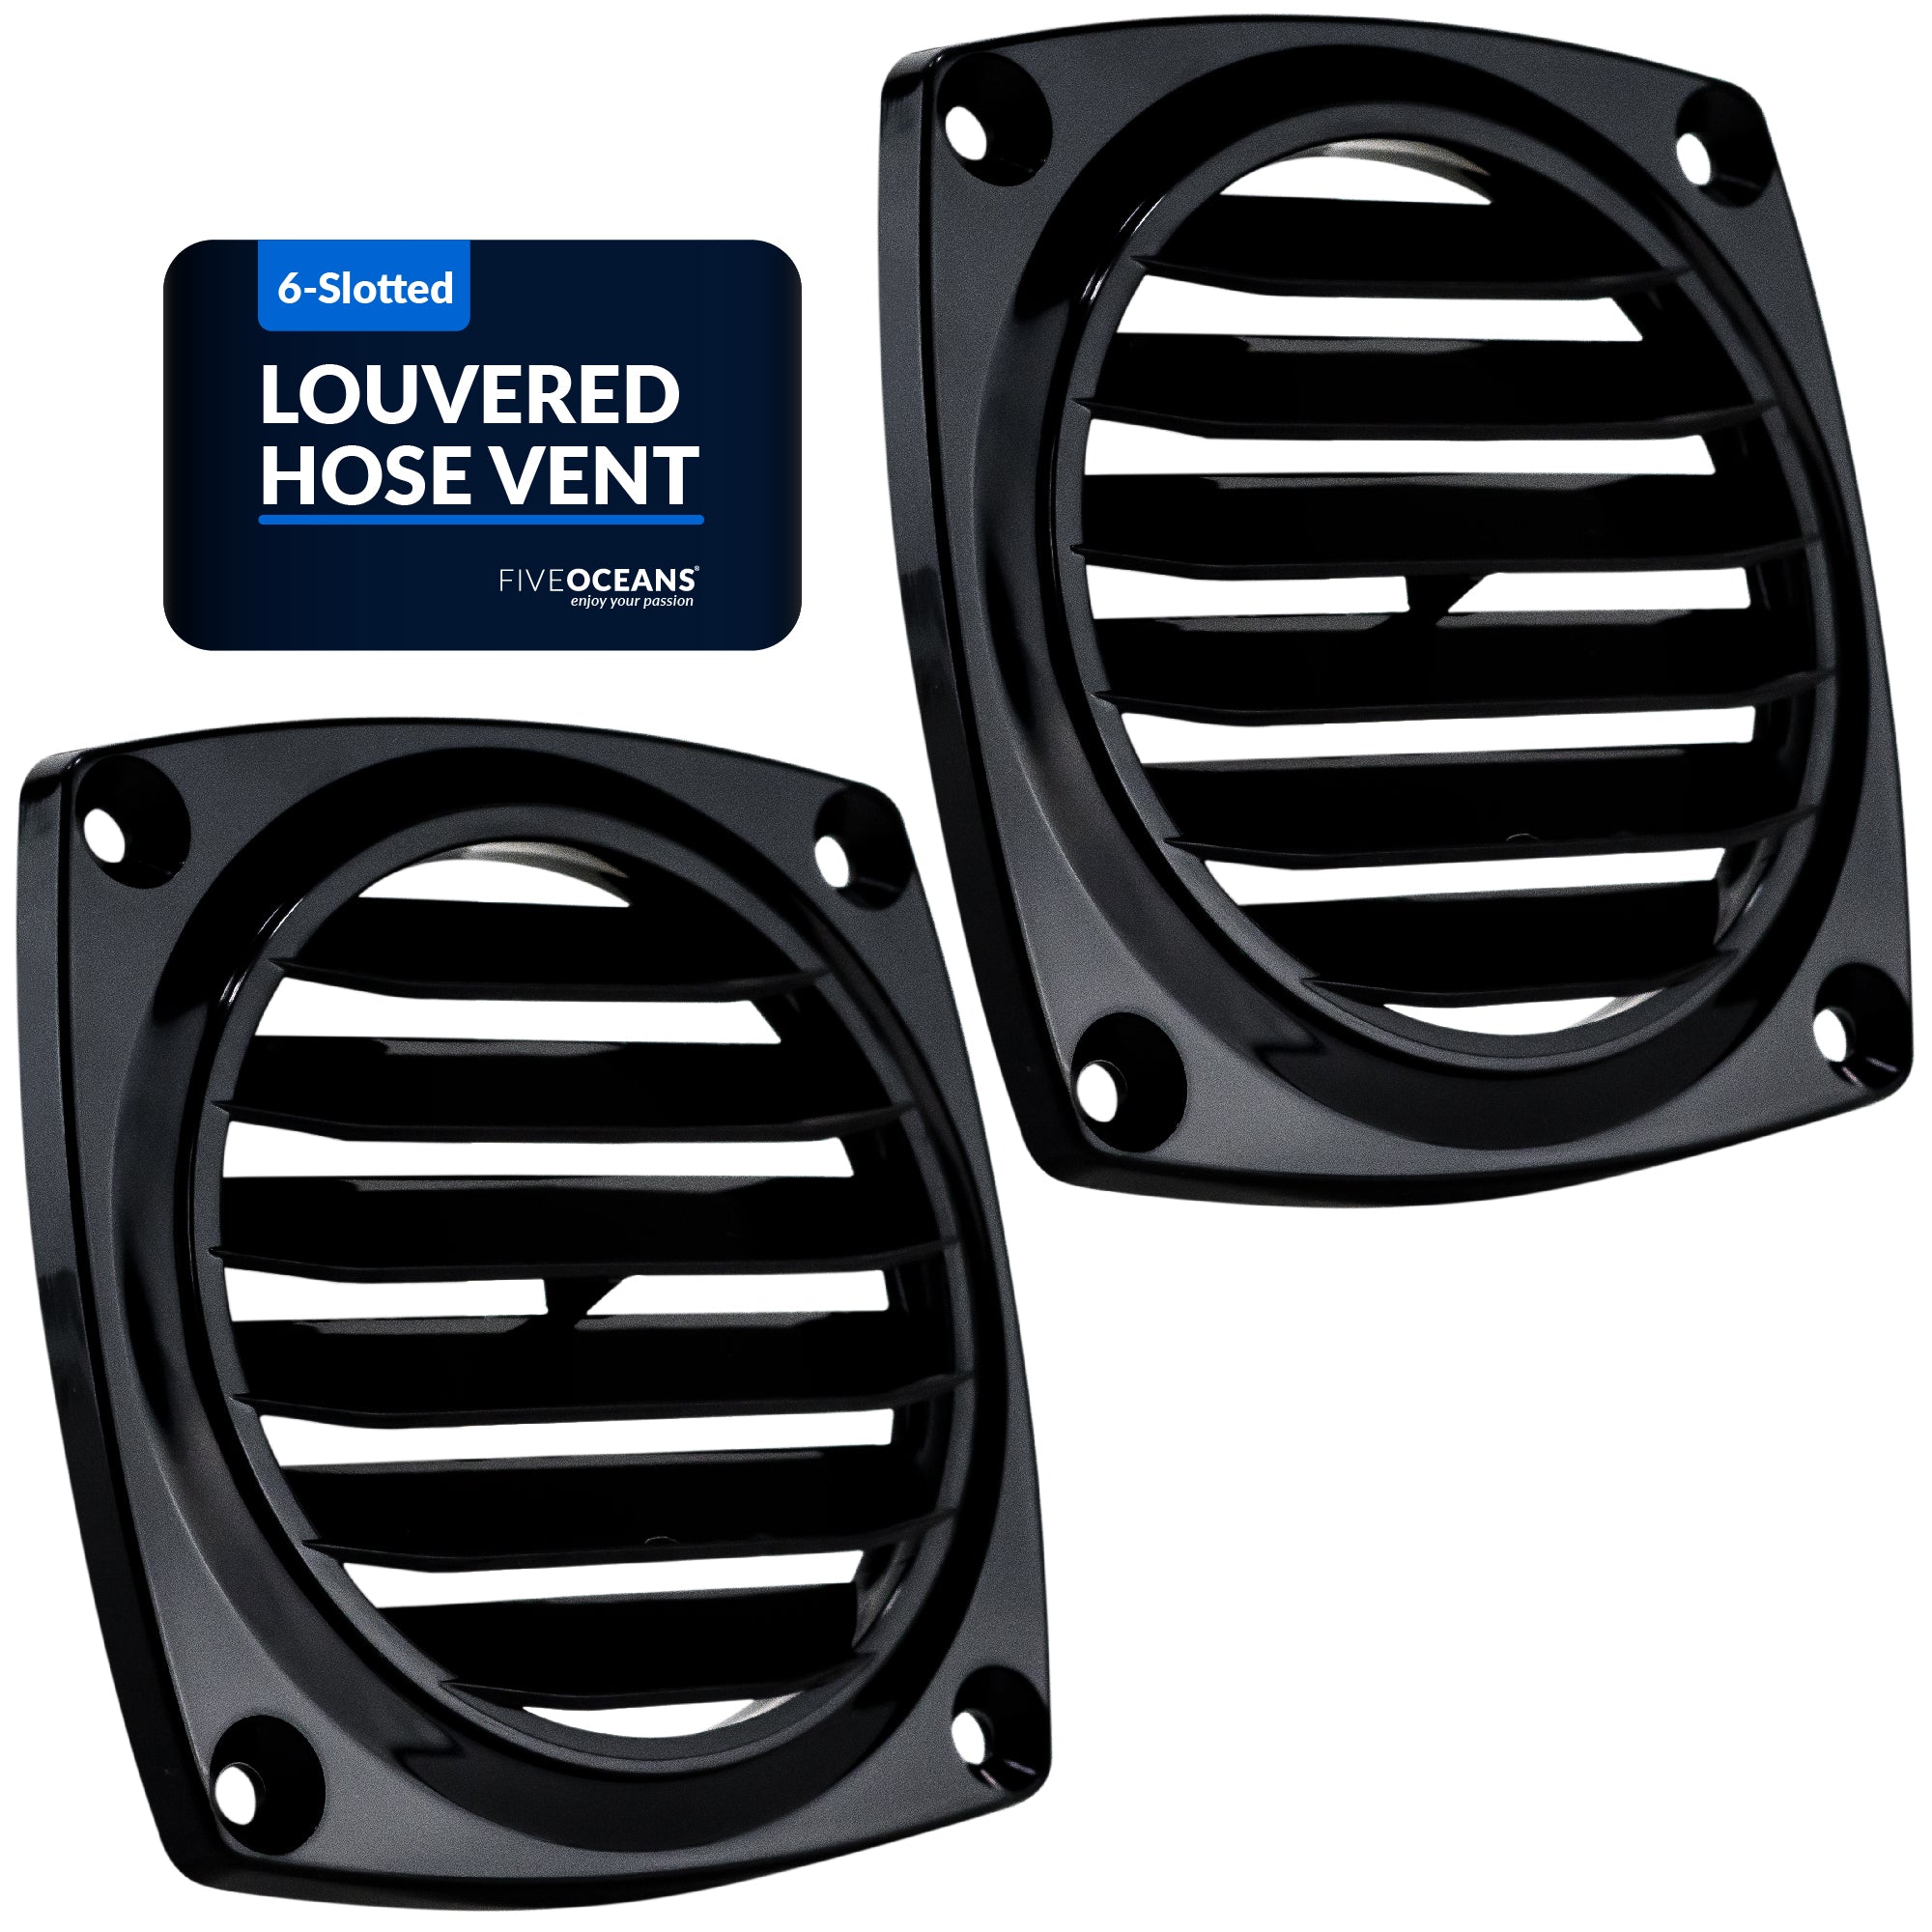 Louvered Flush Hose Ventilators, 6 slots, Black 2-Pack - FO1675-M2